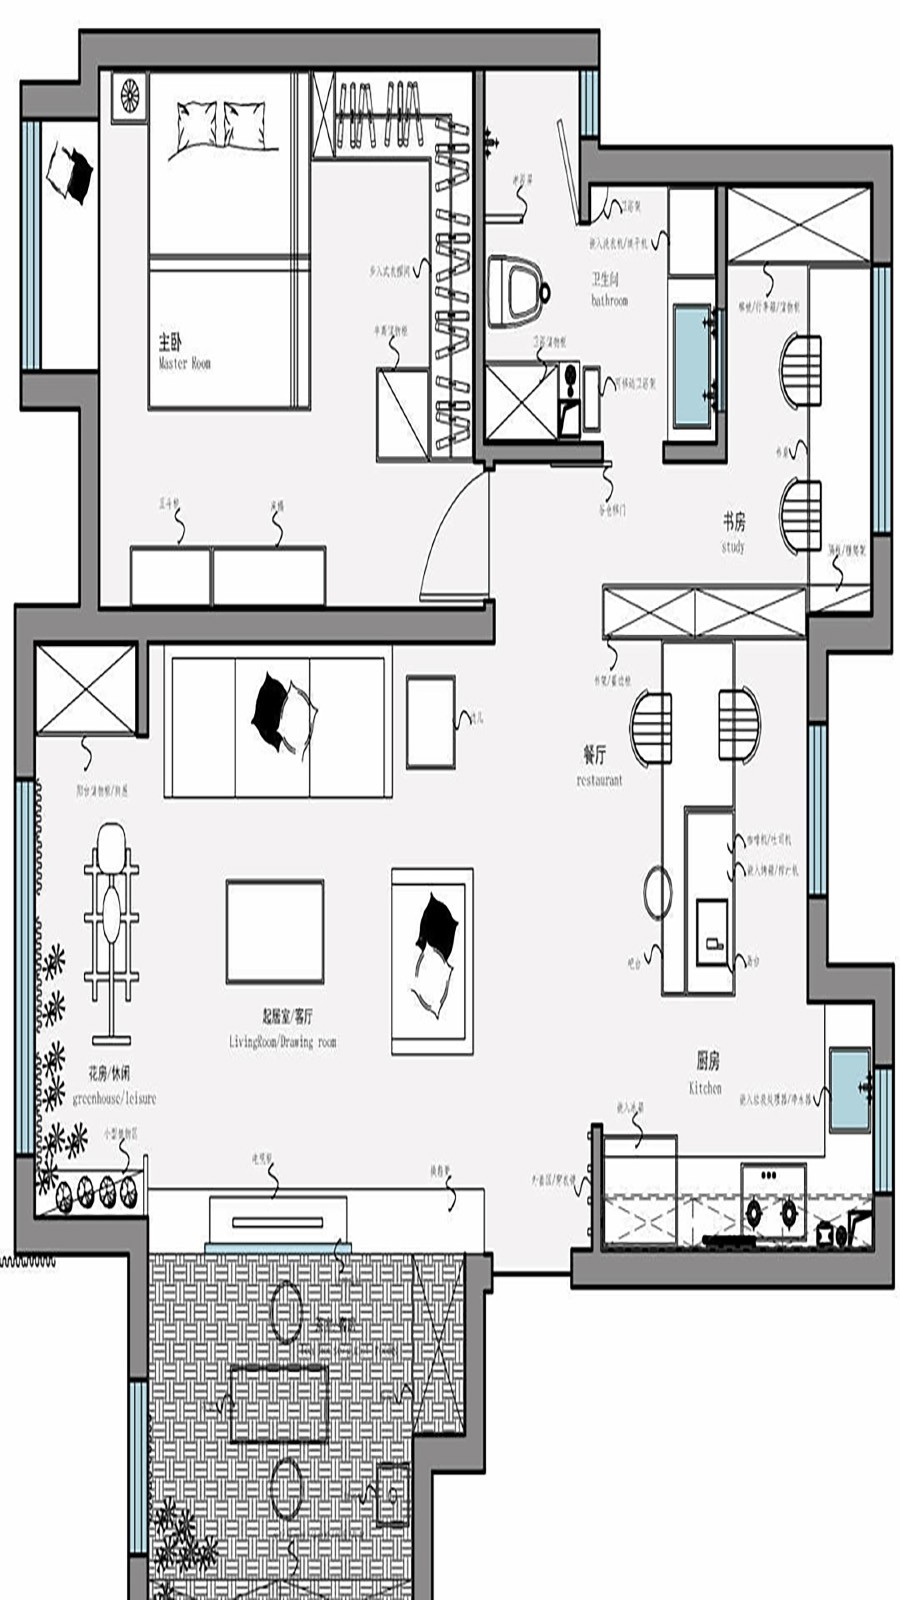 130现代三房装修效果图,让收藏成为家的风景装修案例效果图-美广网(图1)